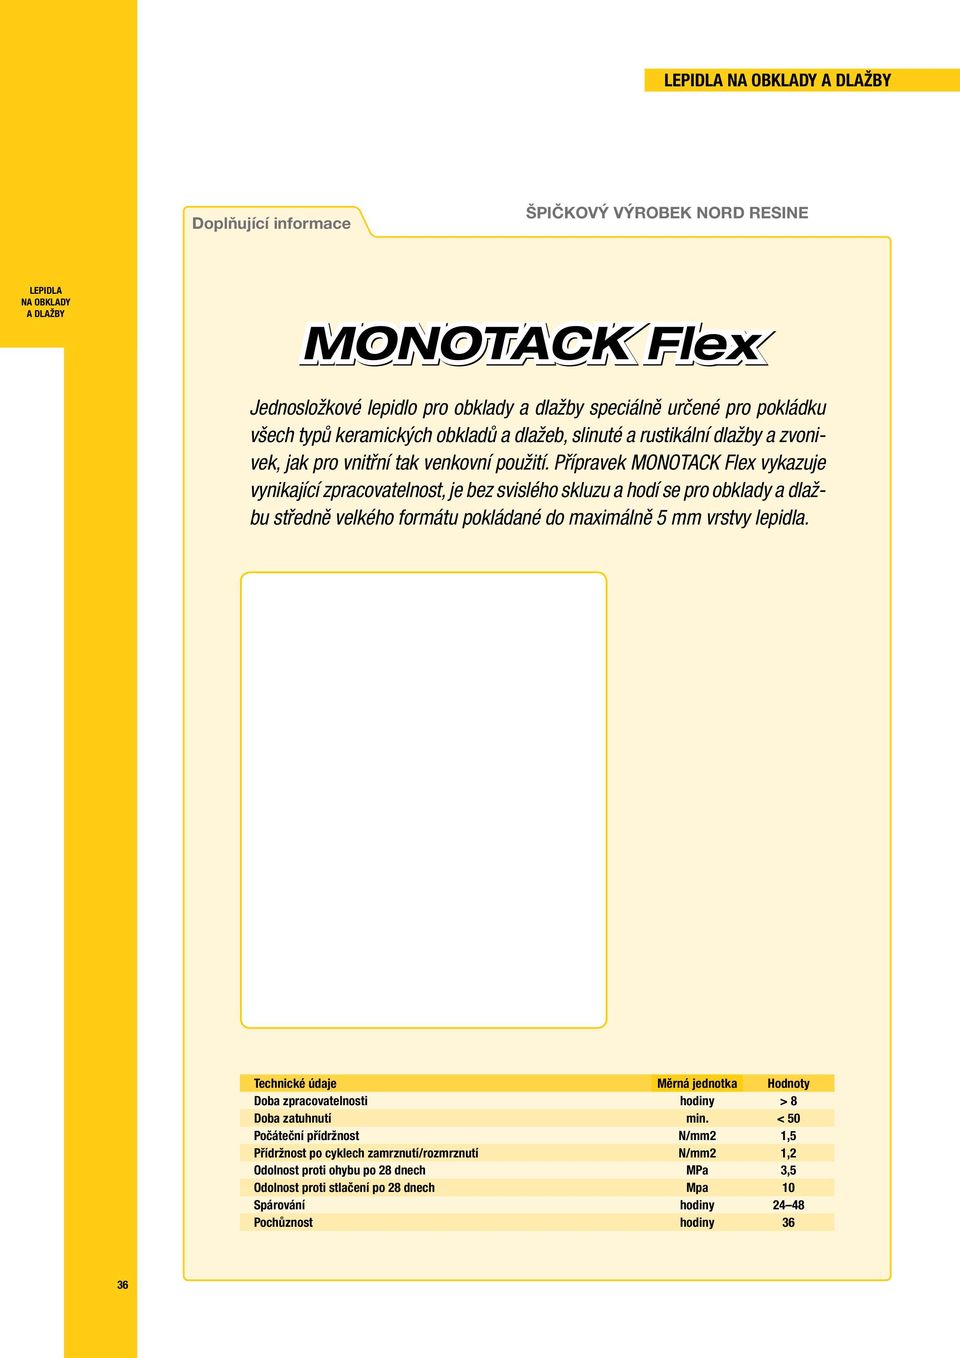 Přípravek MONOTACK Flex vykazuje vynikající zpracovatelnost, je bez svislého skluzu a hodí se pro obklady a dlažbu středně velkého formátu pokládané do maximálně 5 mm vrstvy lepidla.